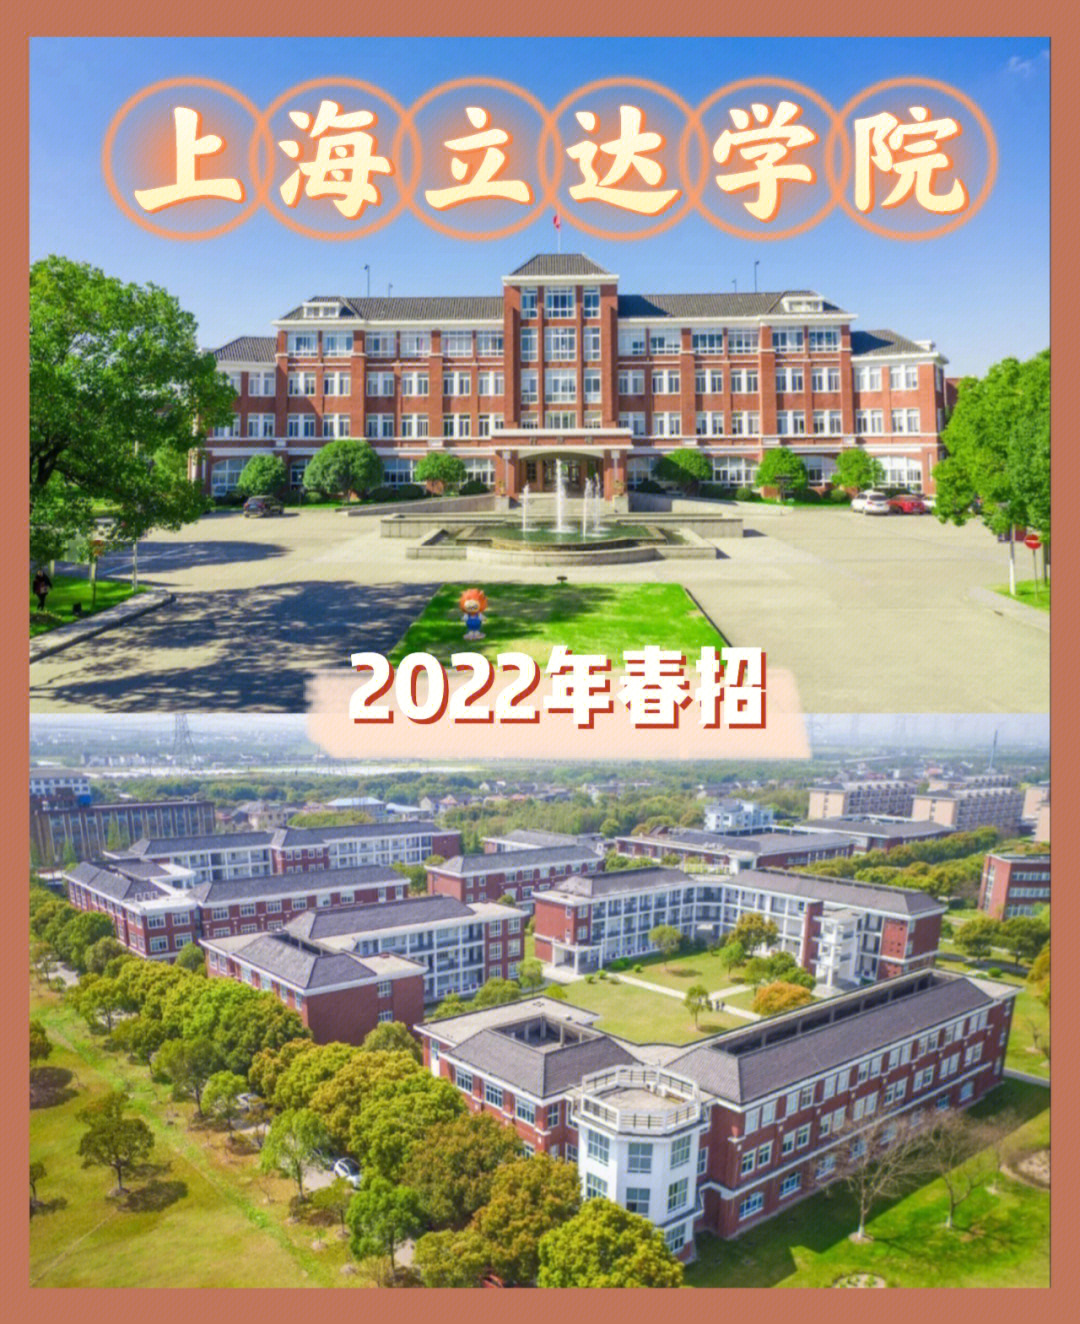 上海立达学院2022年春招计划及自主测试办法